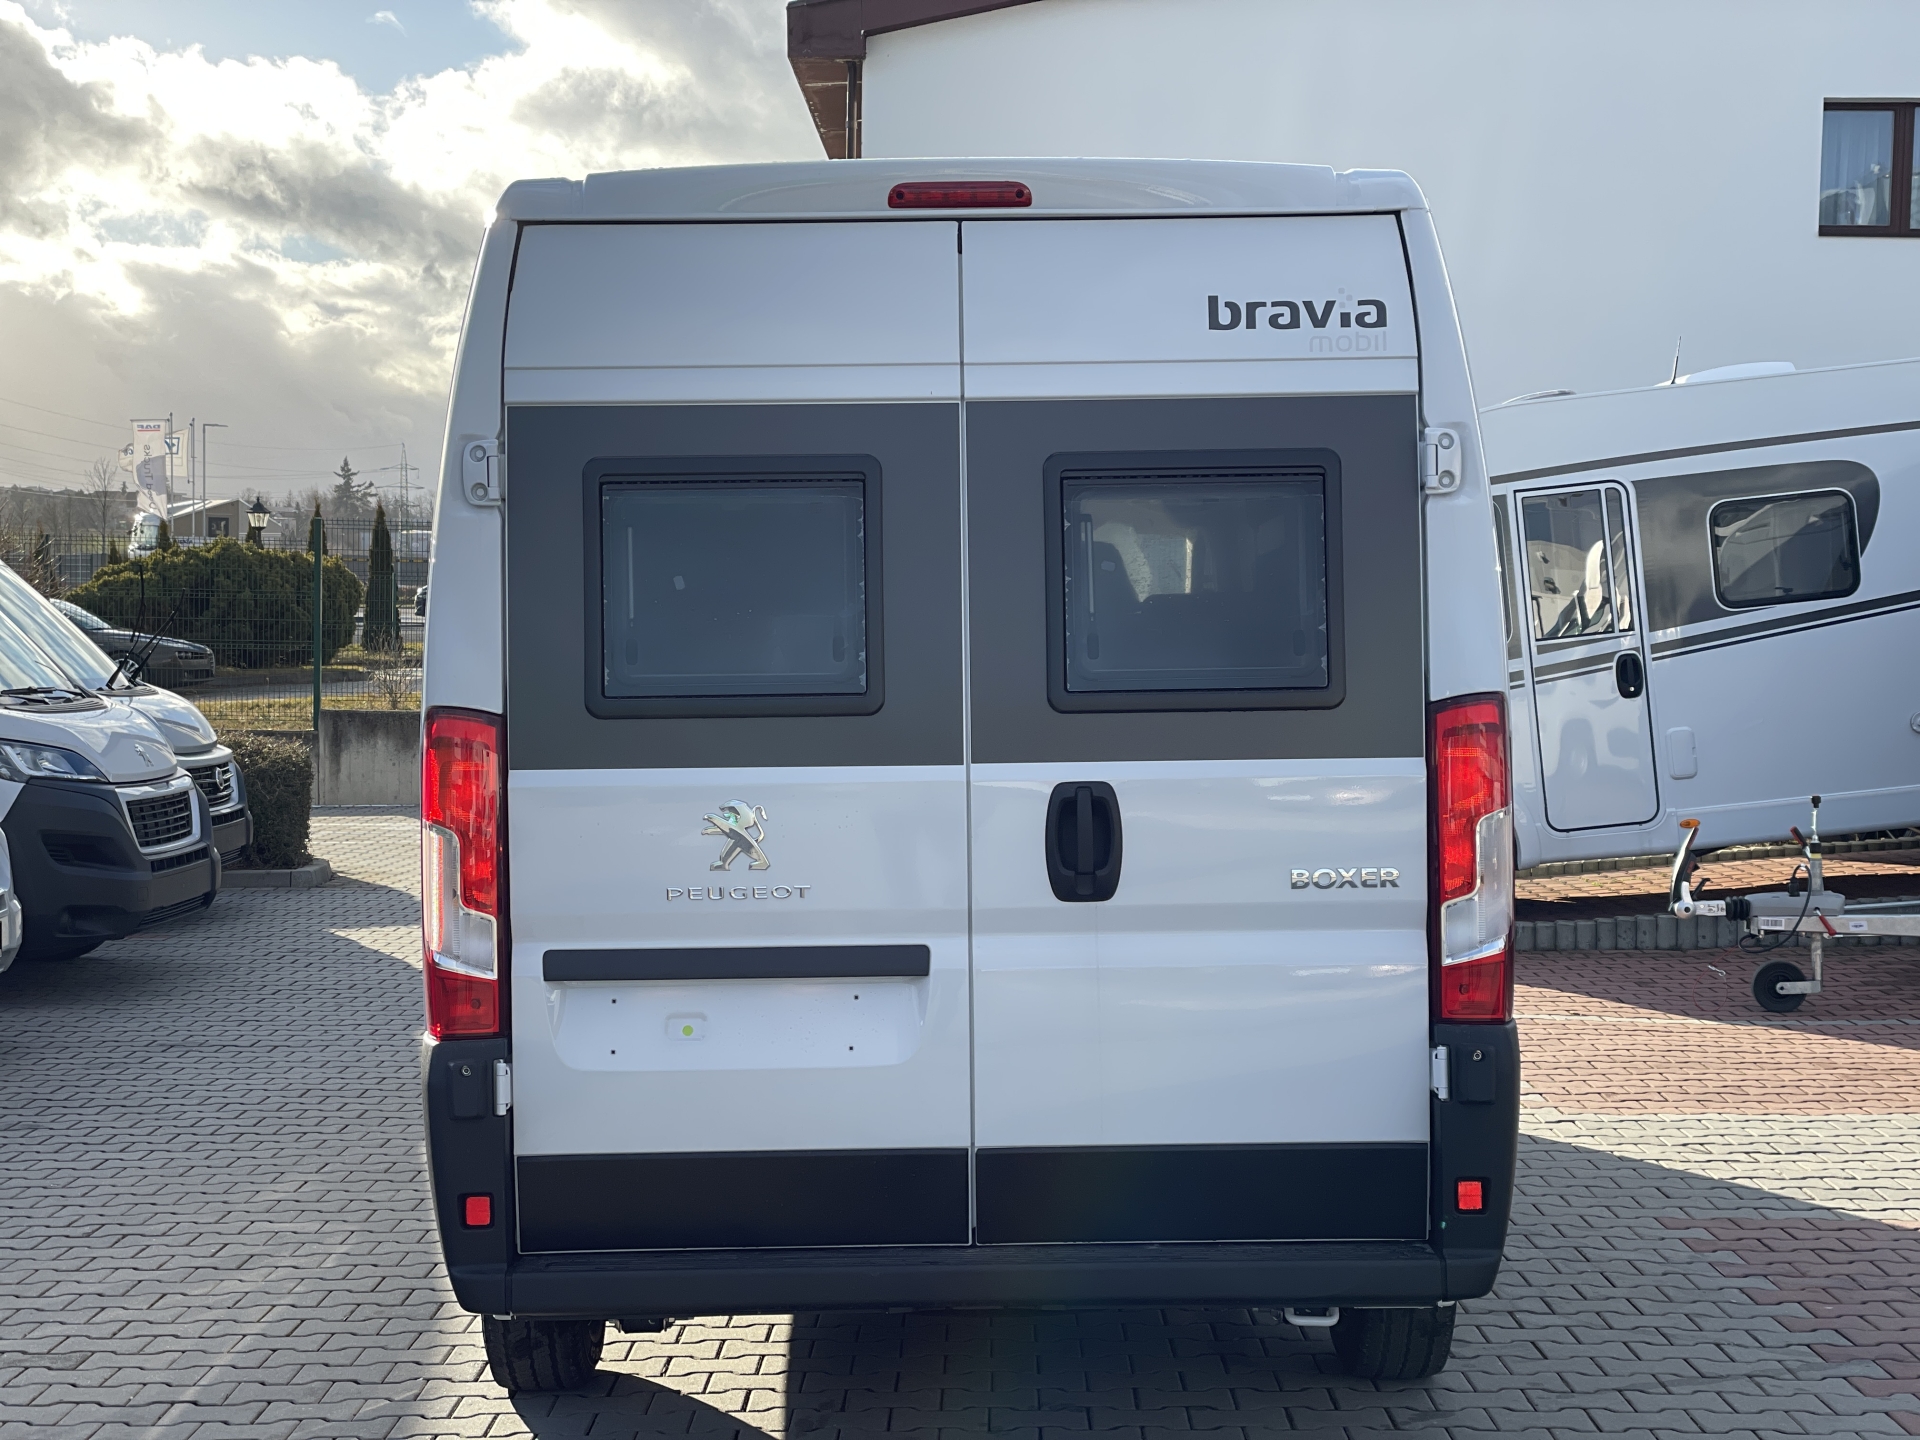 Vestavba Peugeot Bravia Hykro karavan